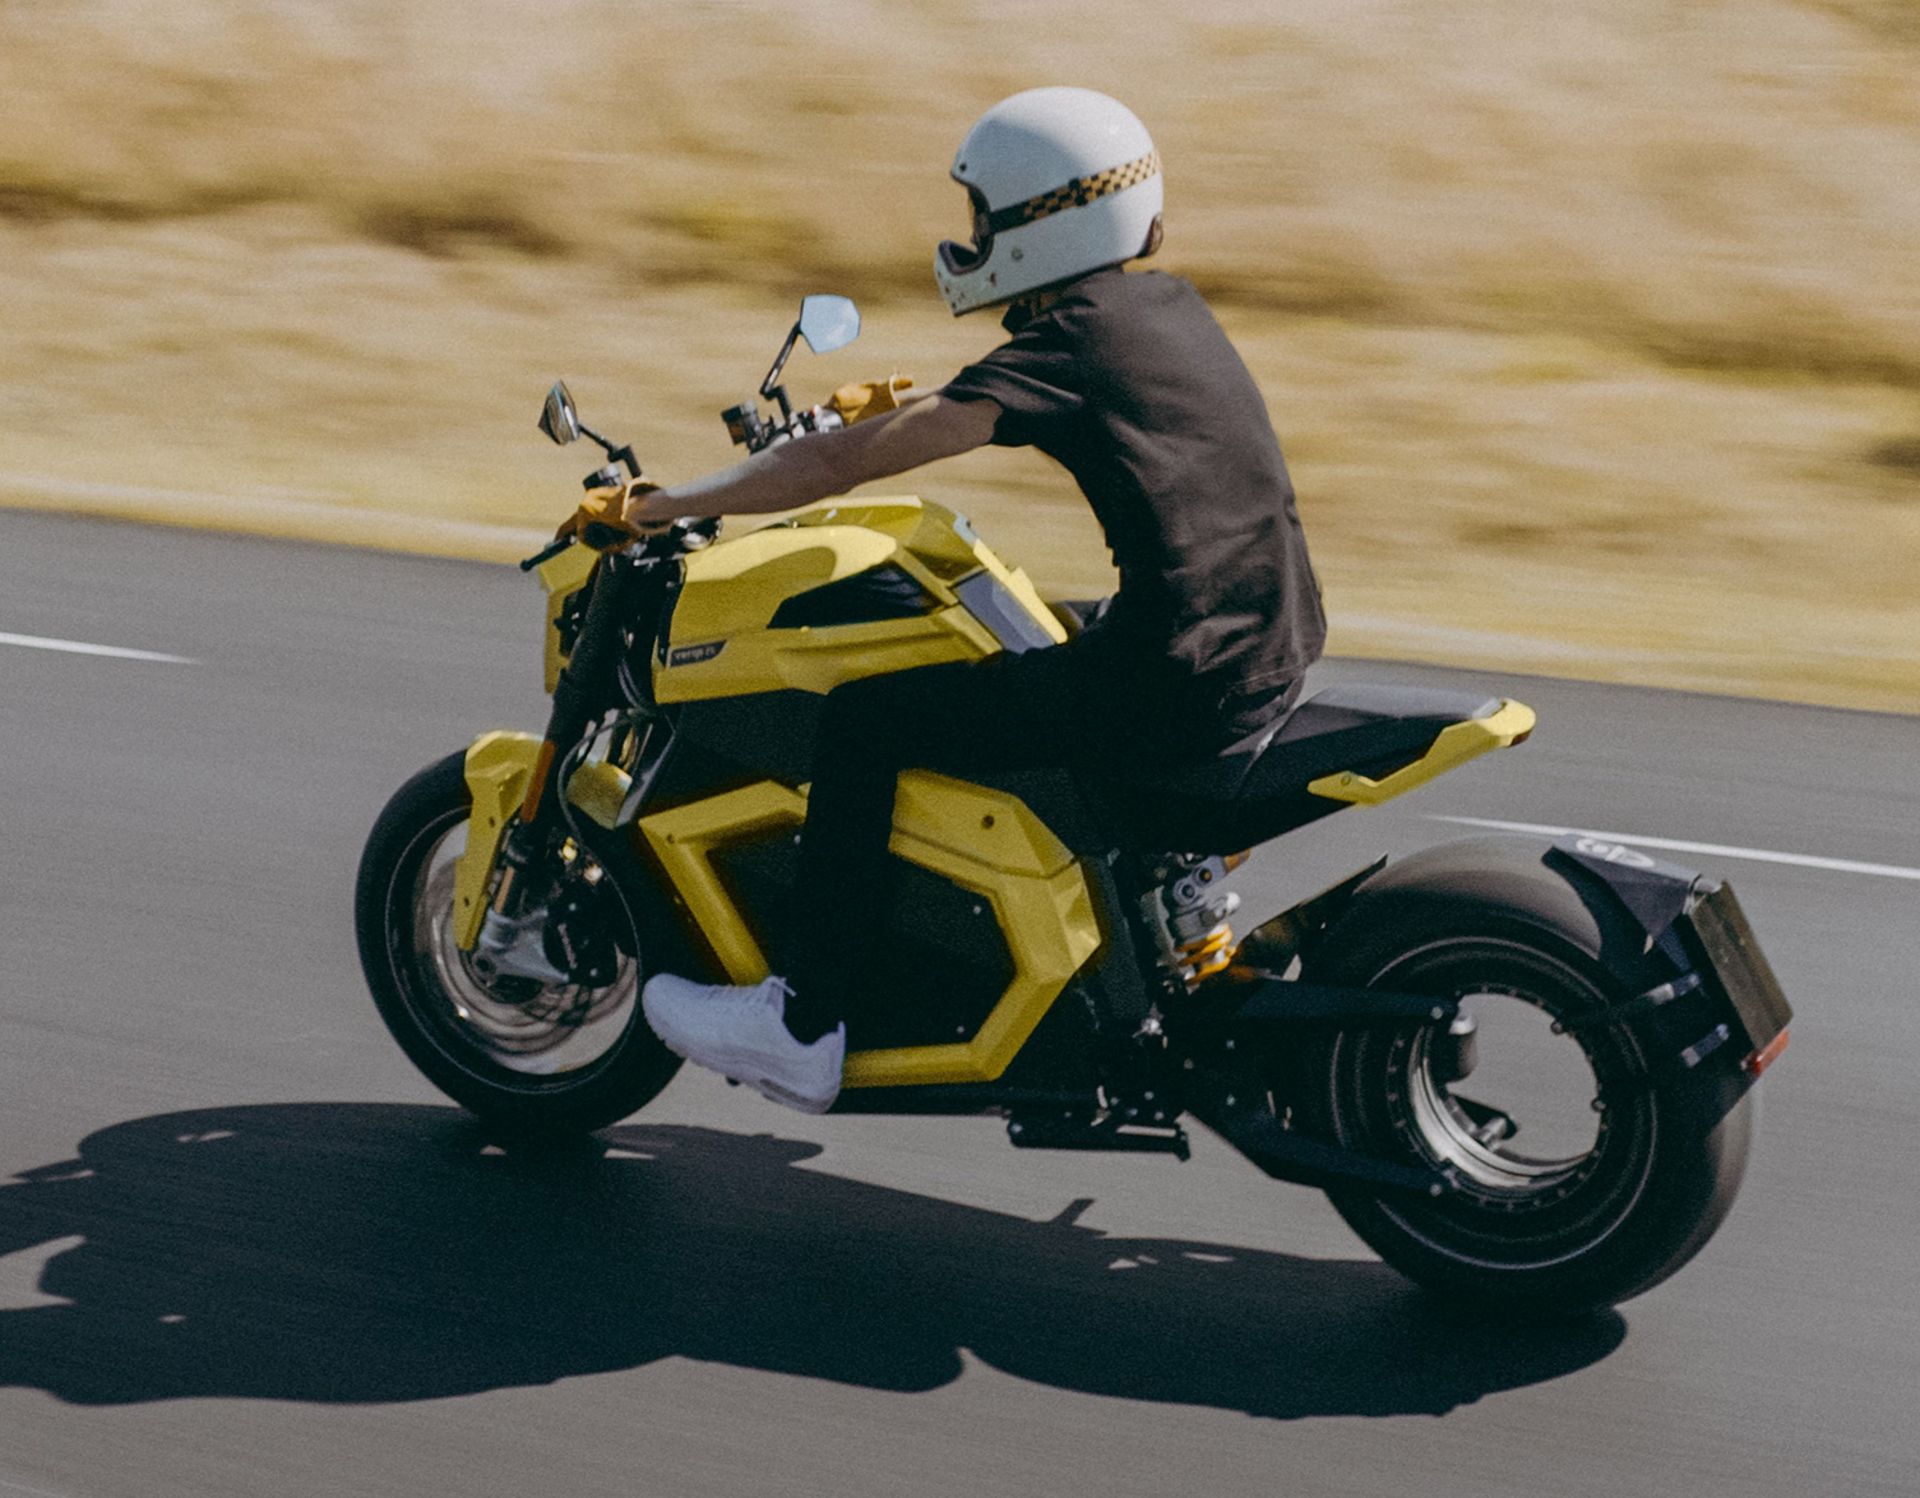 موتورسیکلت ts ultra ورج زرد رنگ که شخصی آن را در جاده می راند